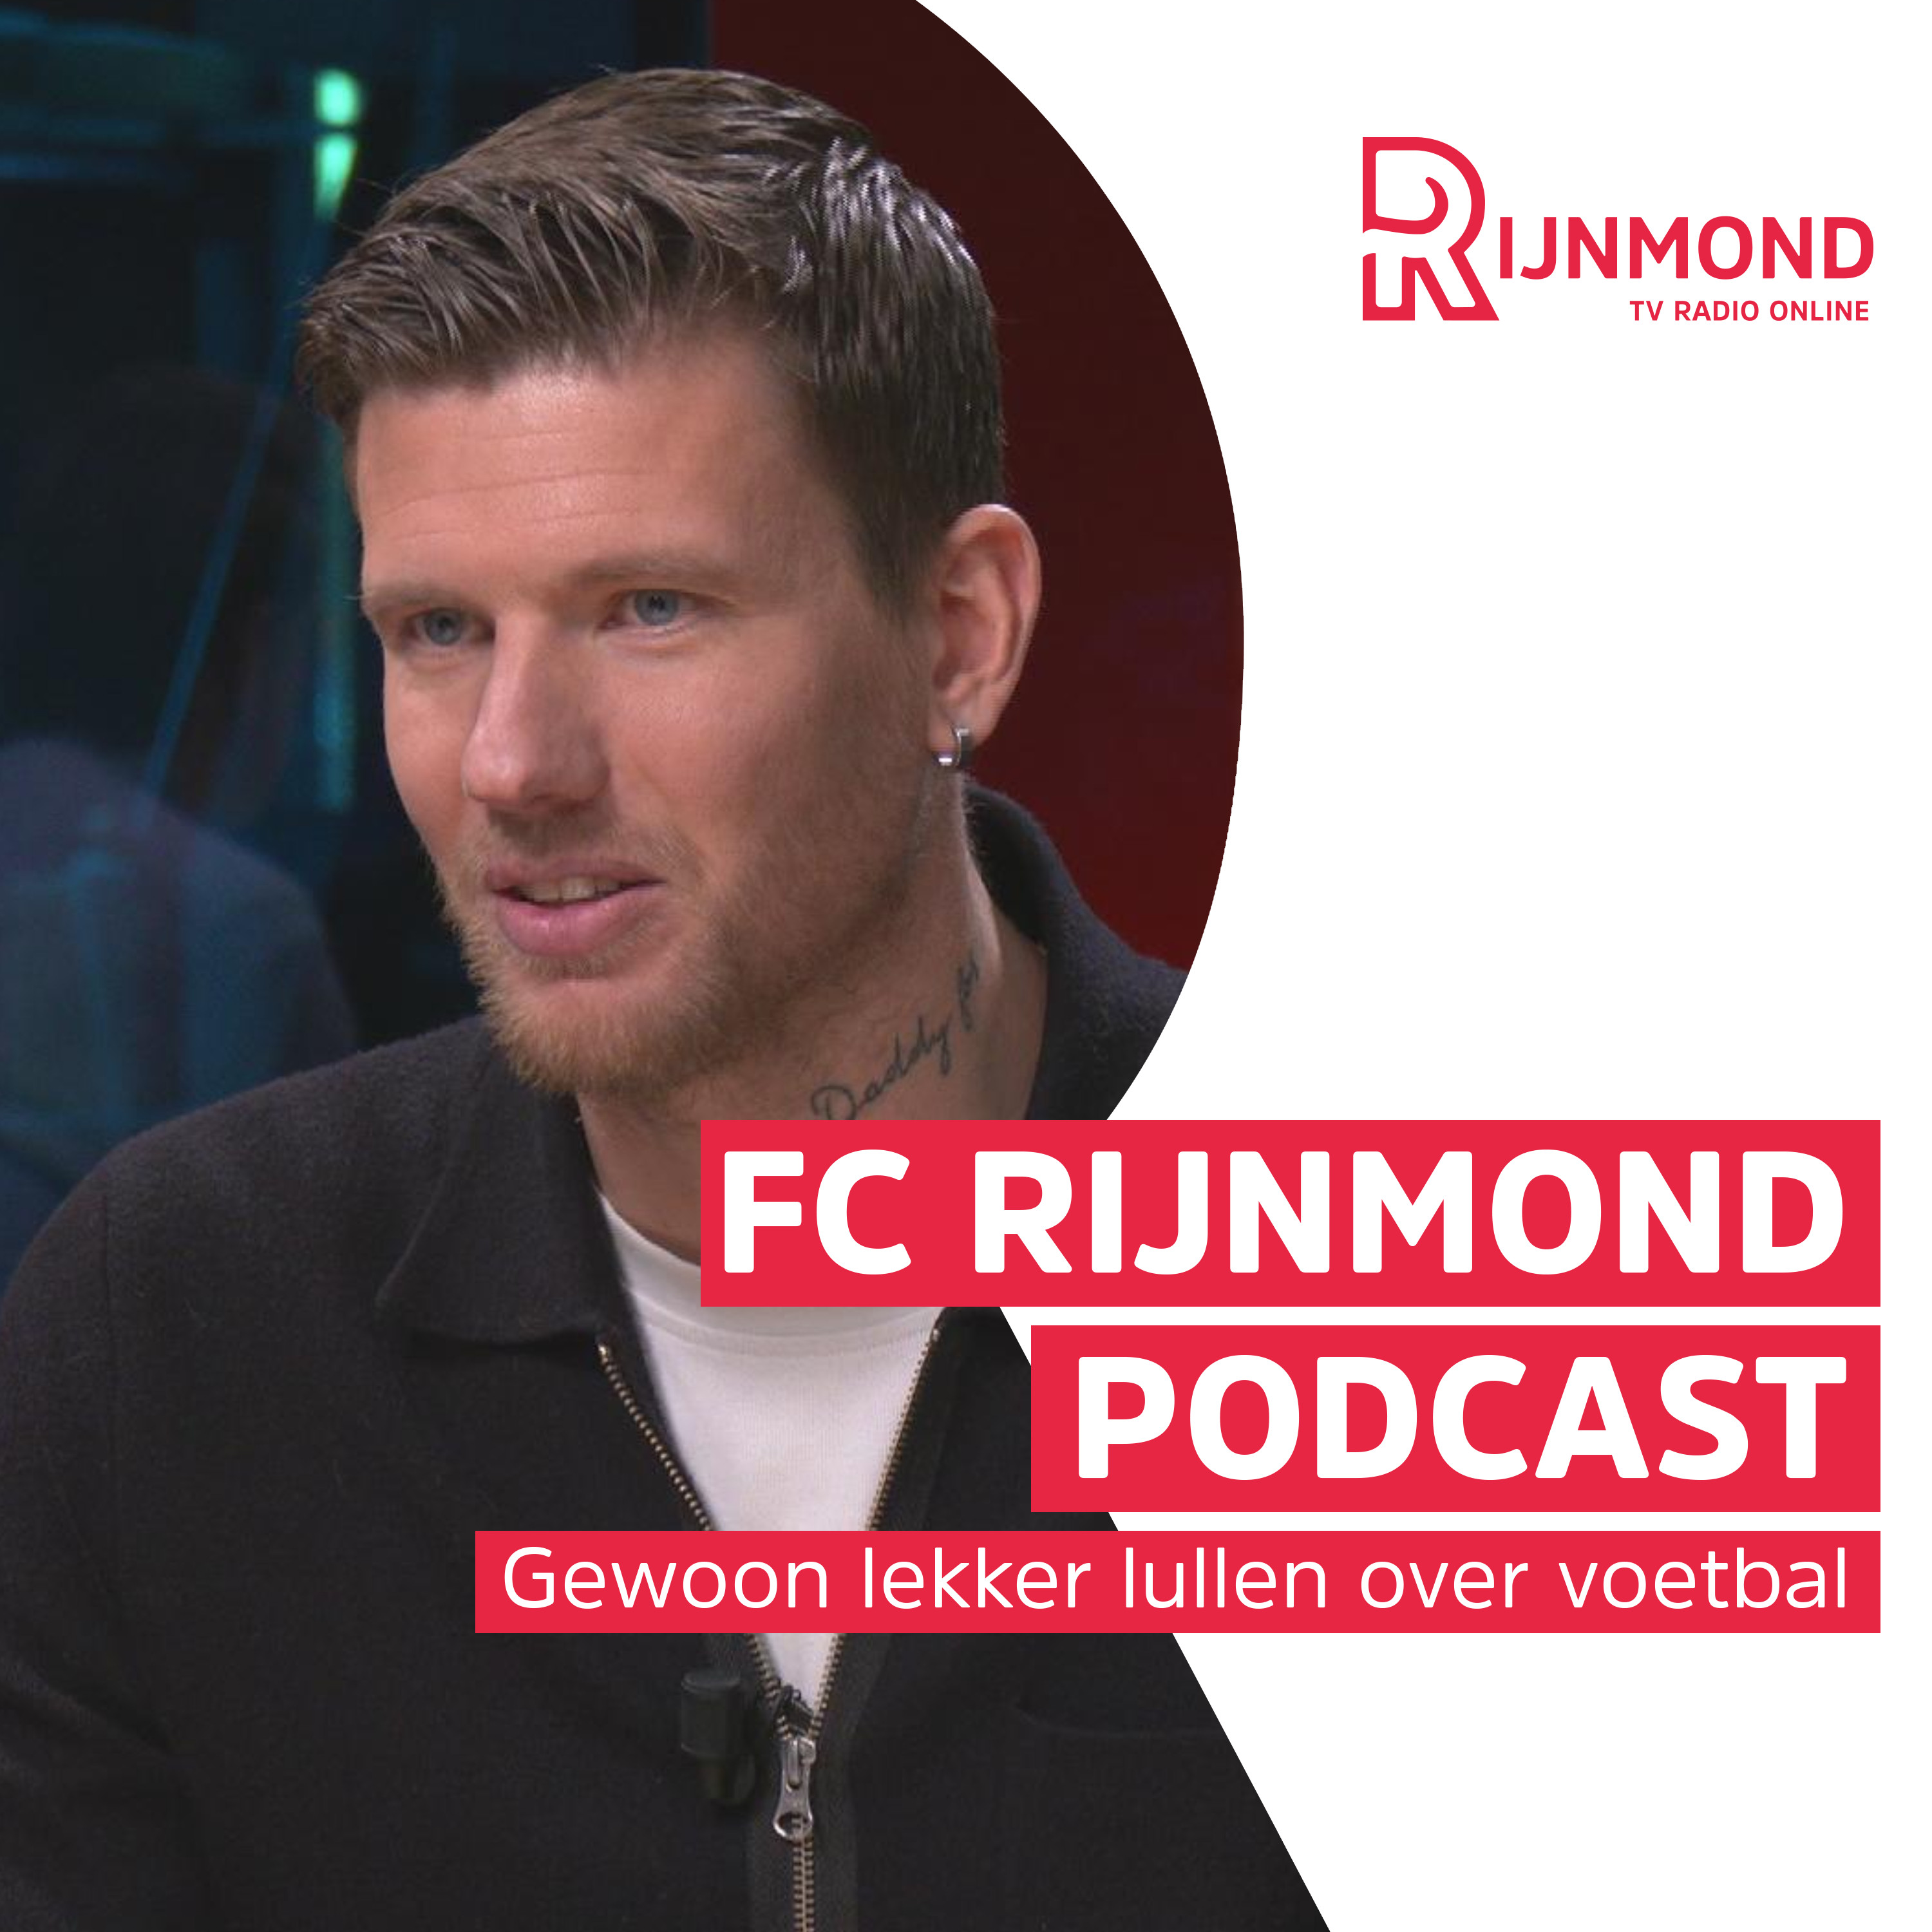 FC Rijnmond heeft medelijden met Stengs én andere Feyenoorder: 'Vind het sneu voor hem'